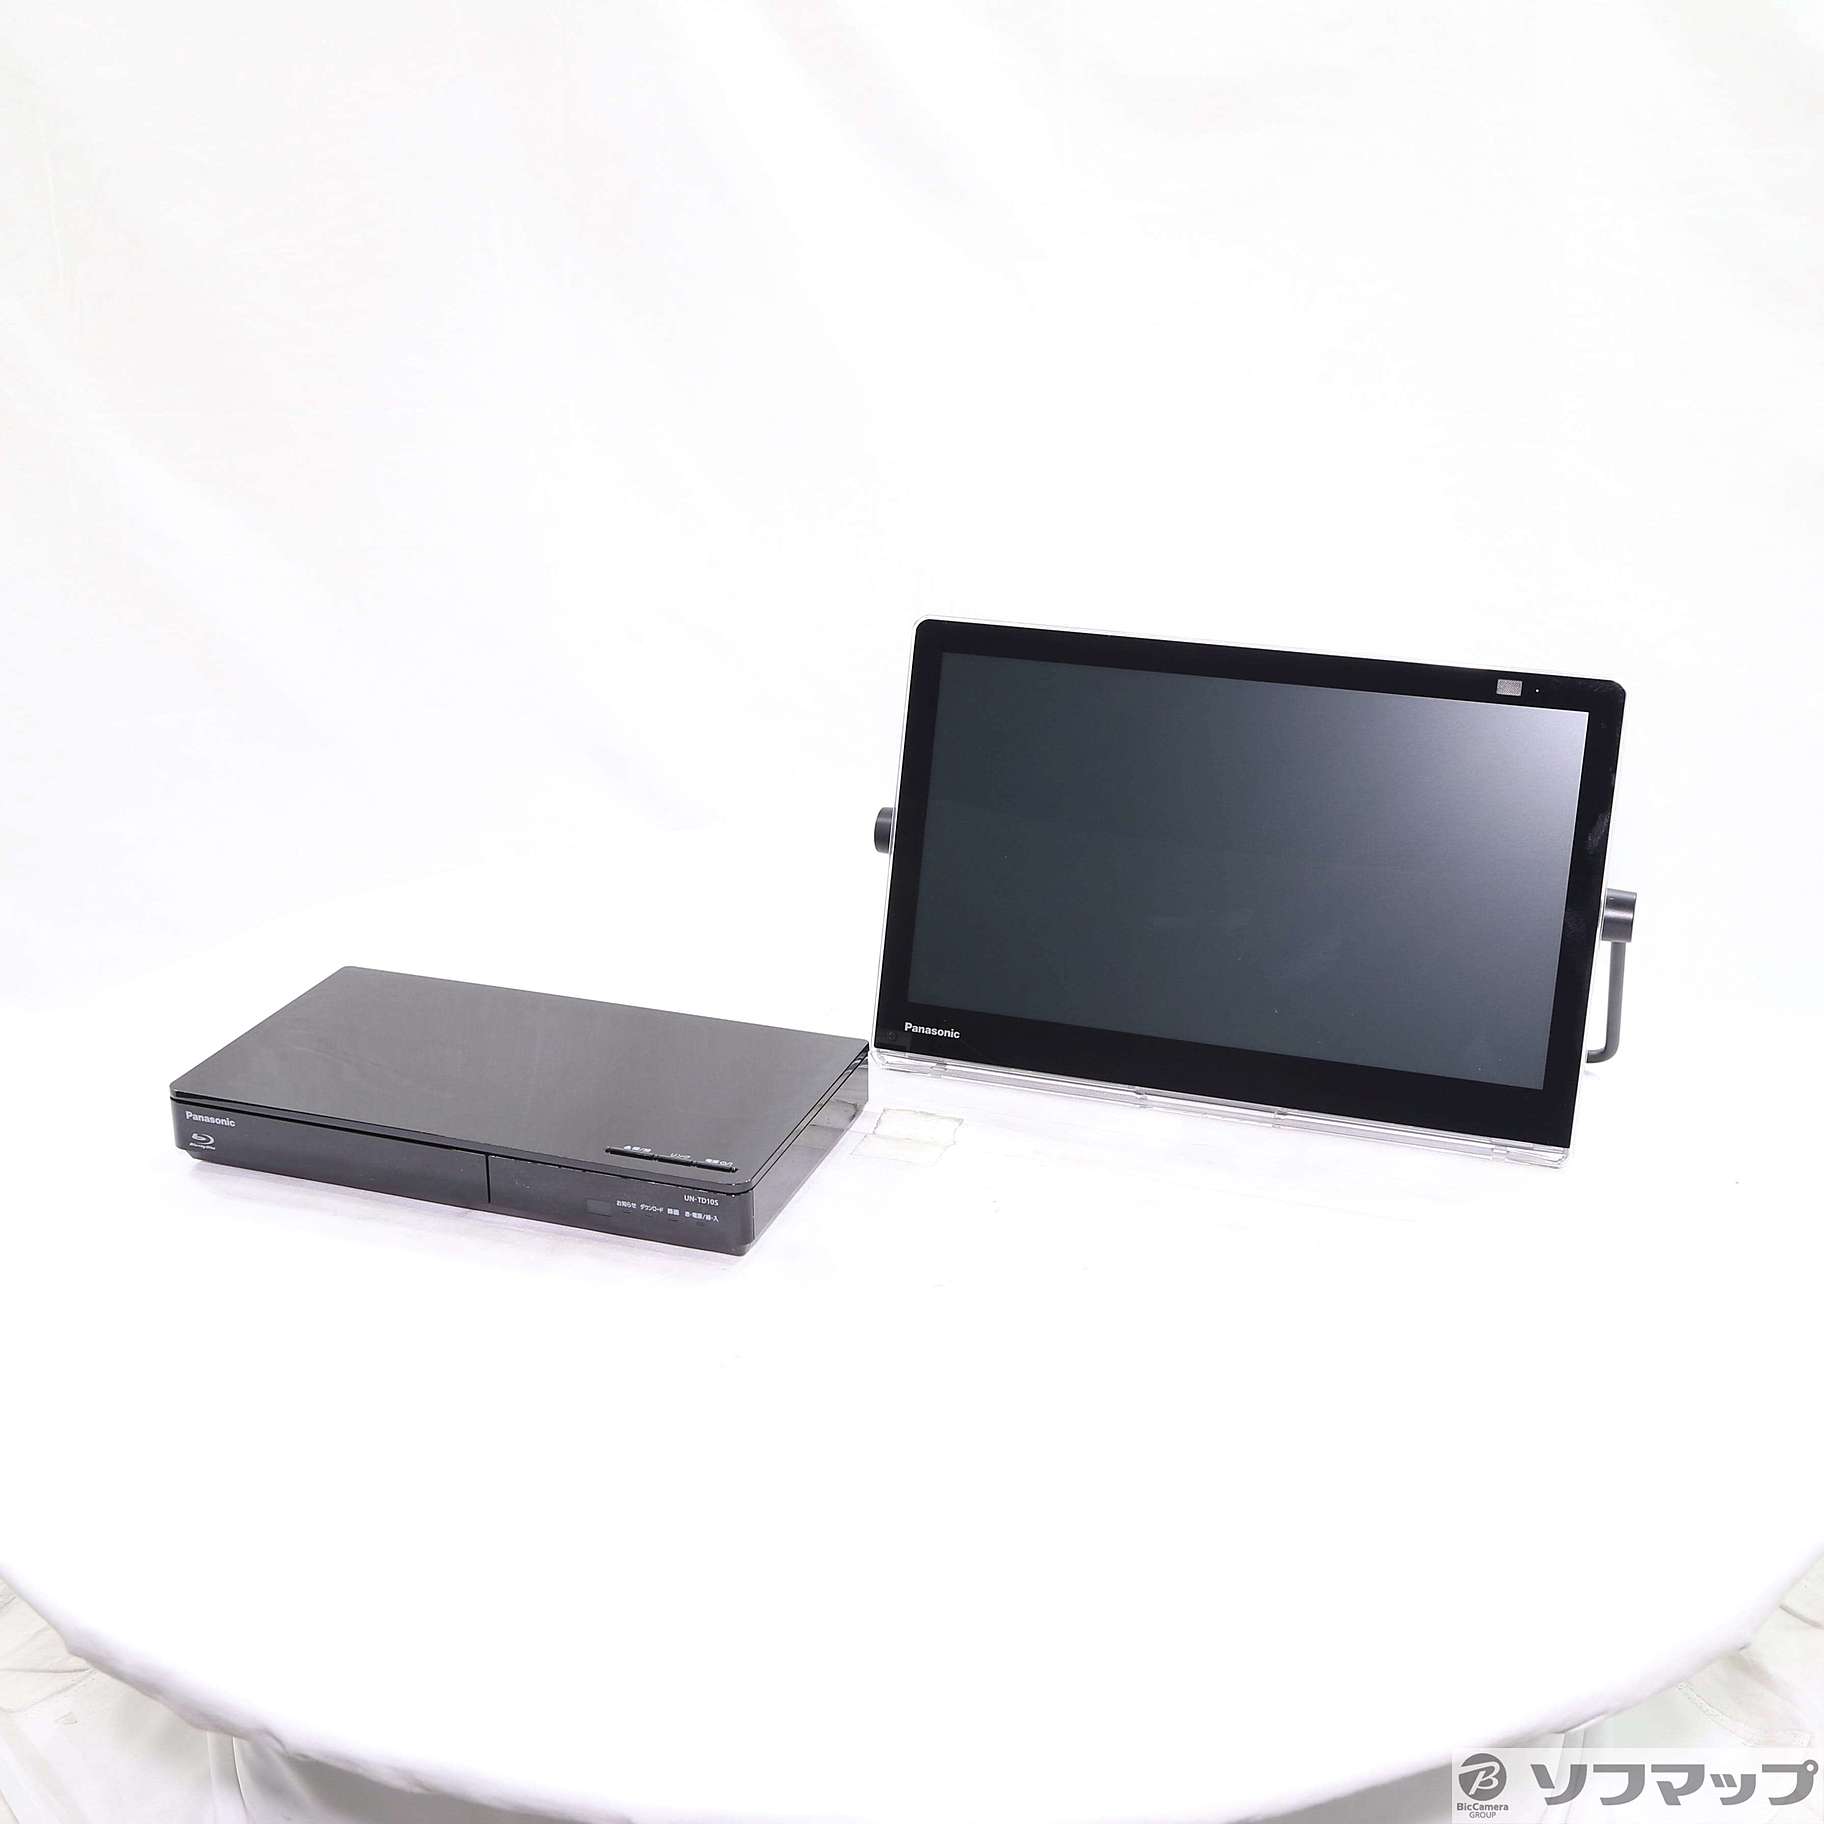 Panasonic プライベート・ビエラ UN-15CTD8 500GB - PC/タブレット